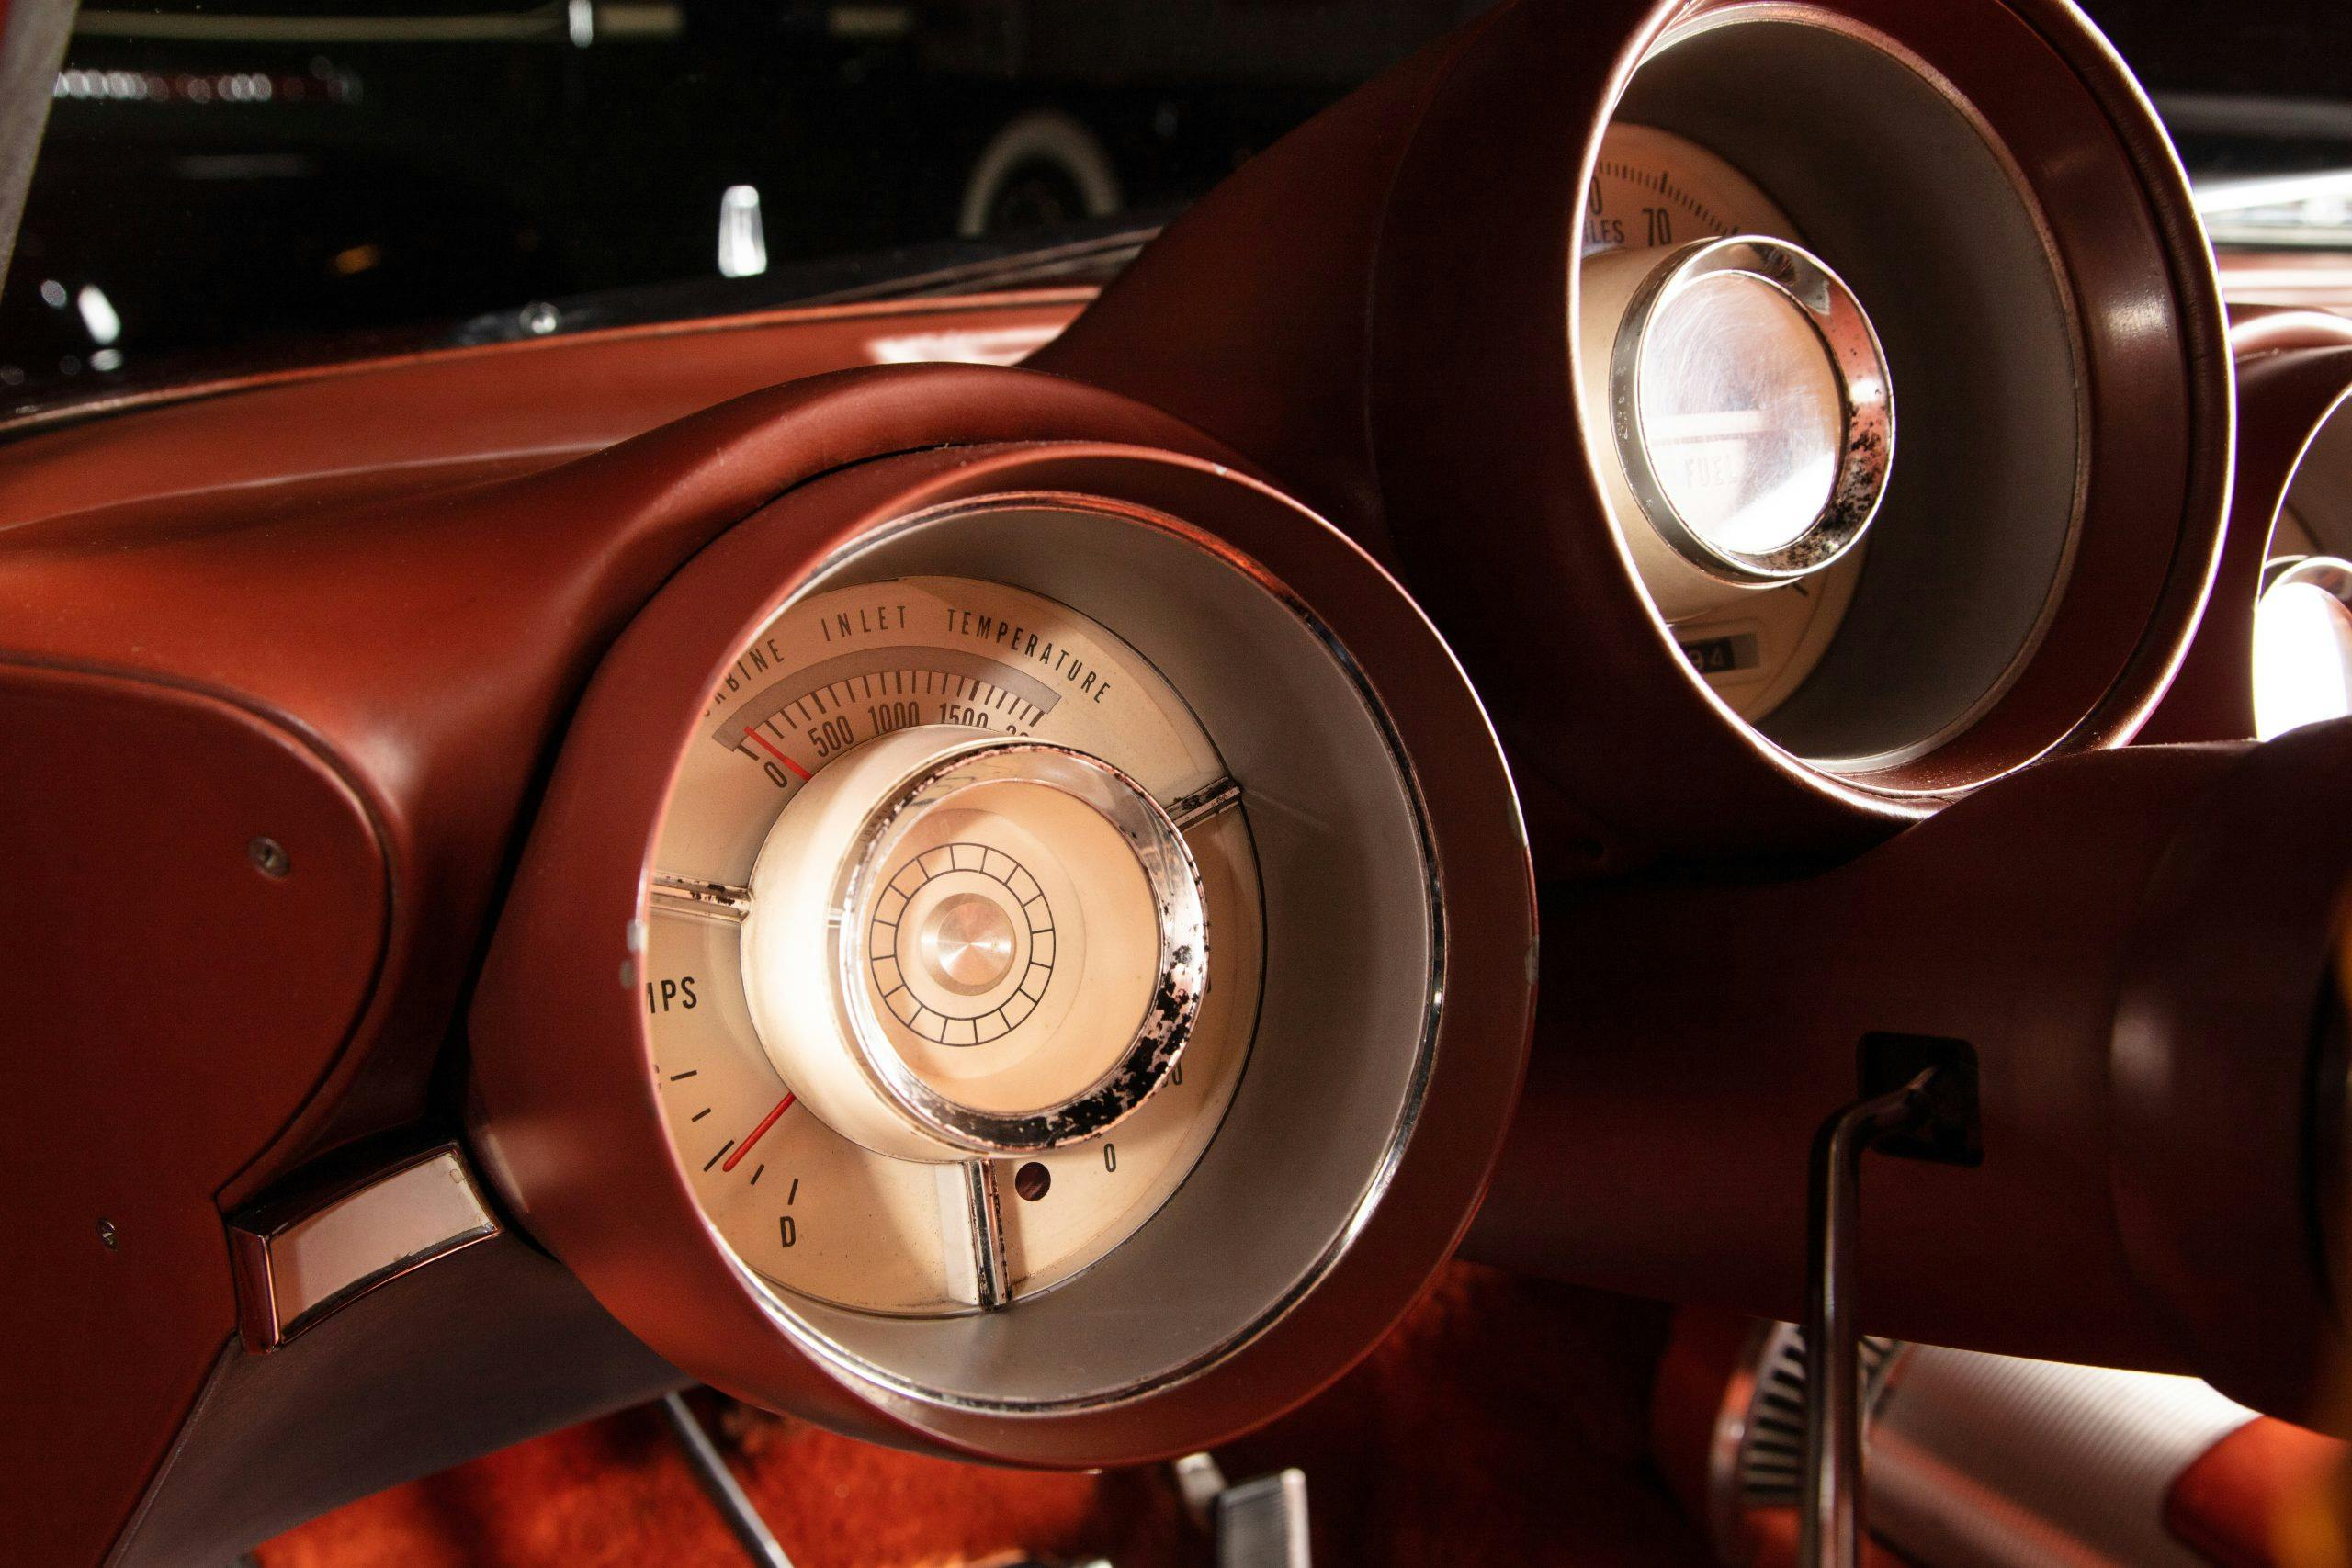 Chrysler Turbine car interior gauges